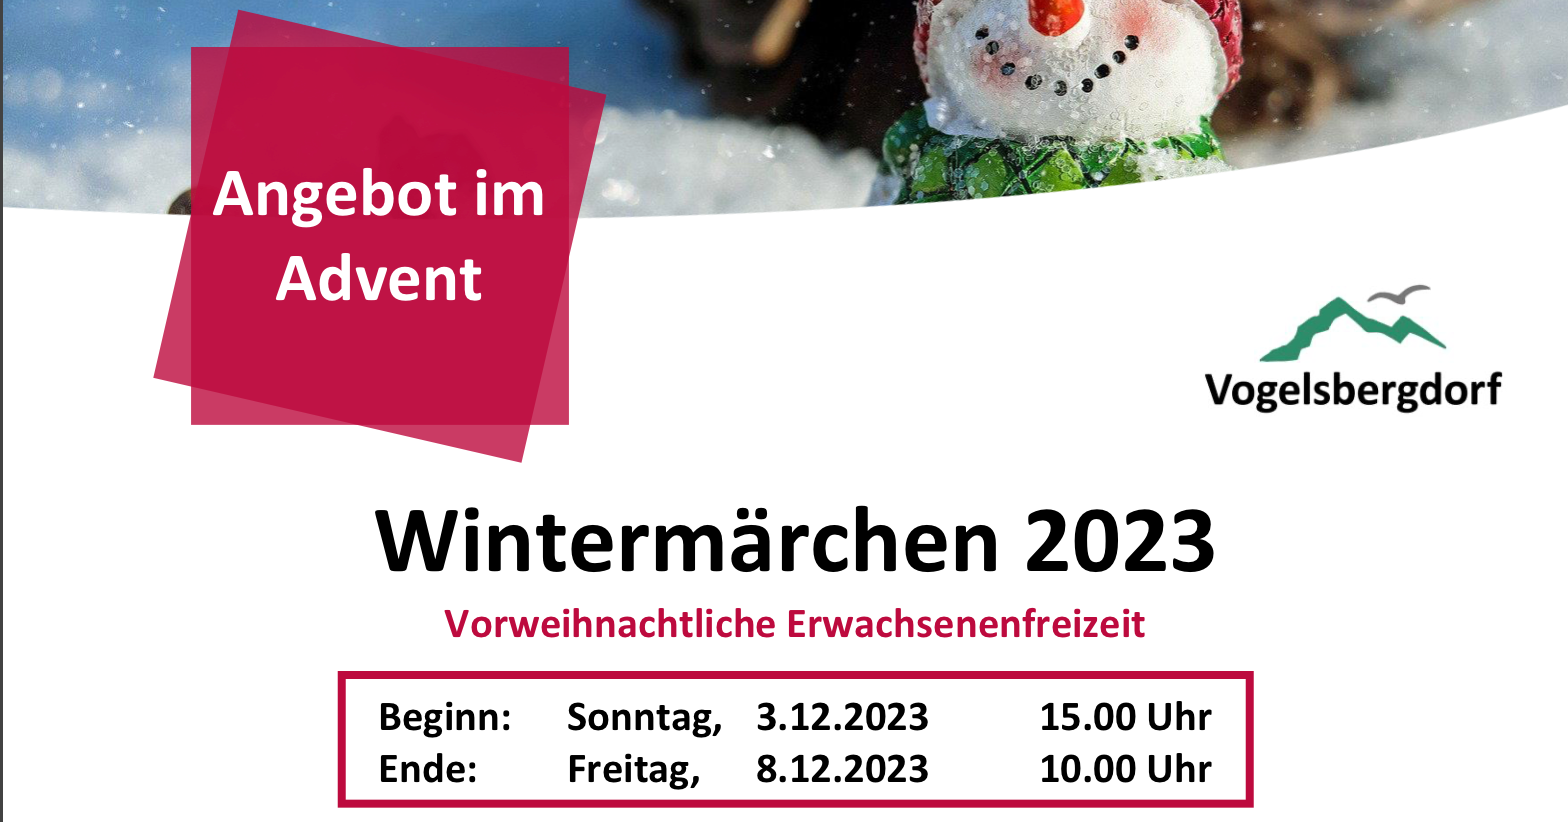 Wintermärchen 2023 - Angebote im Advent